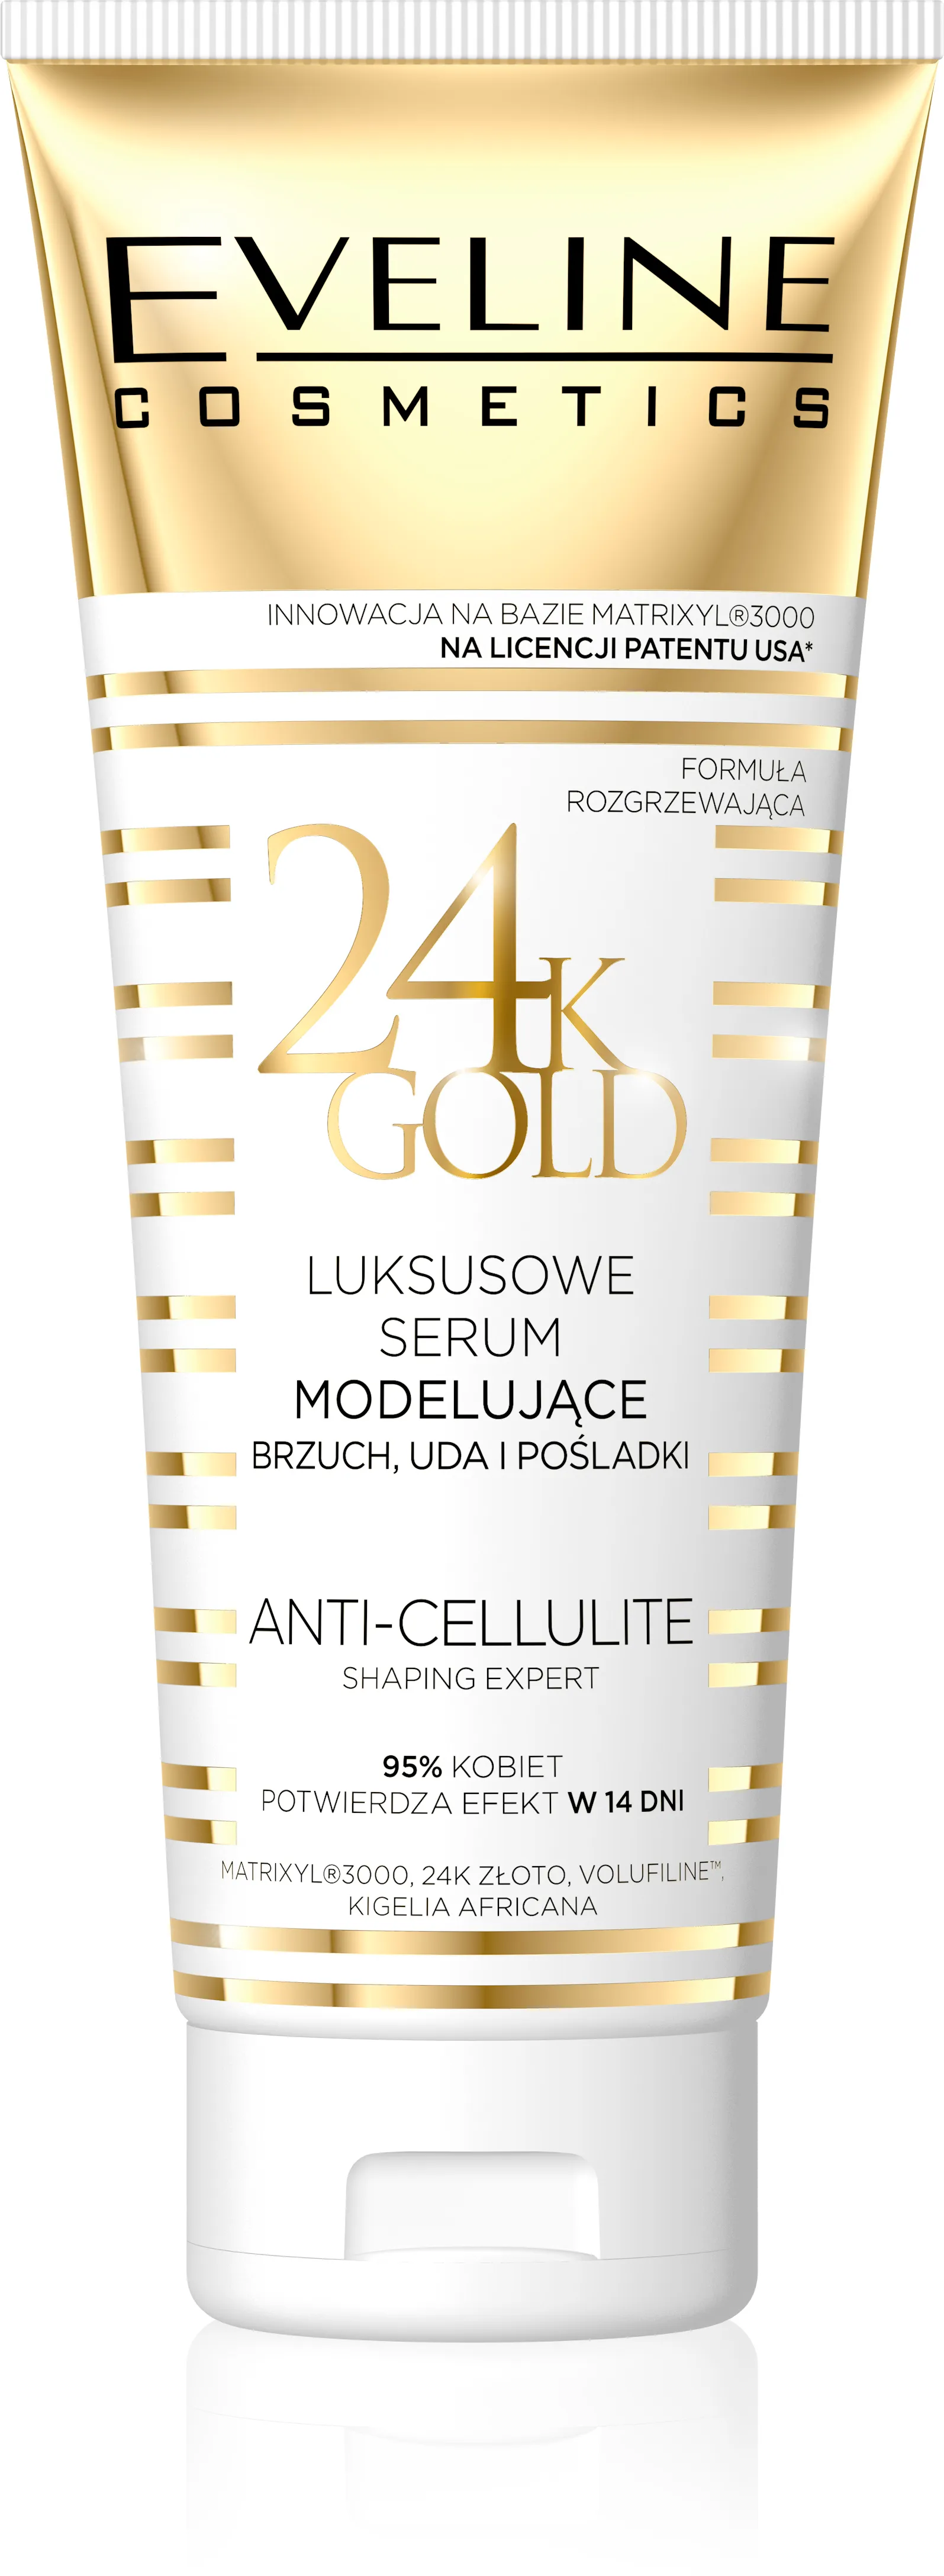 Eveline 24K Gold, luksusowe serum modelujące brzuch, uda i pośladki, anty-cellulitowe, 250 ml